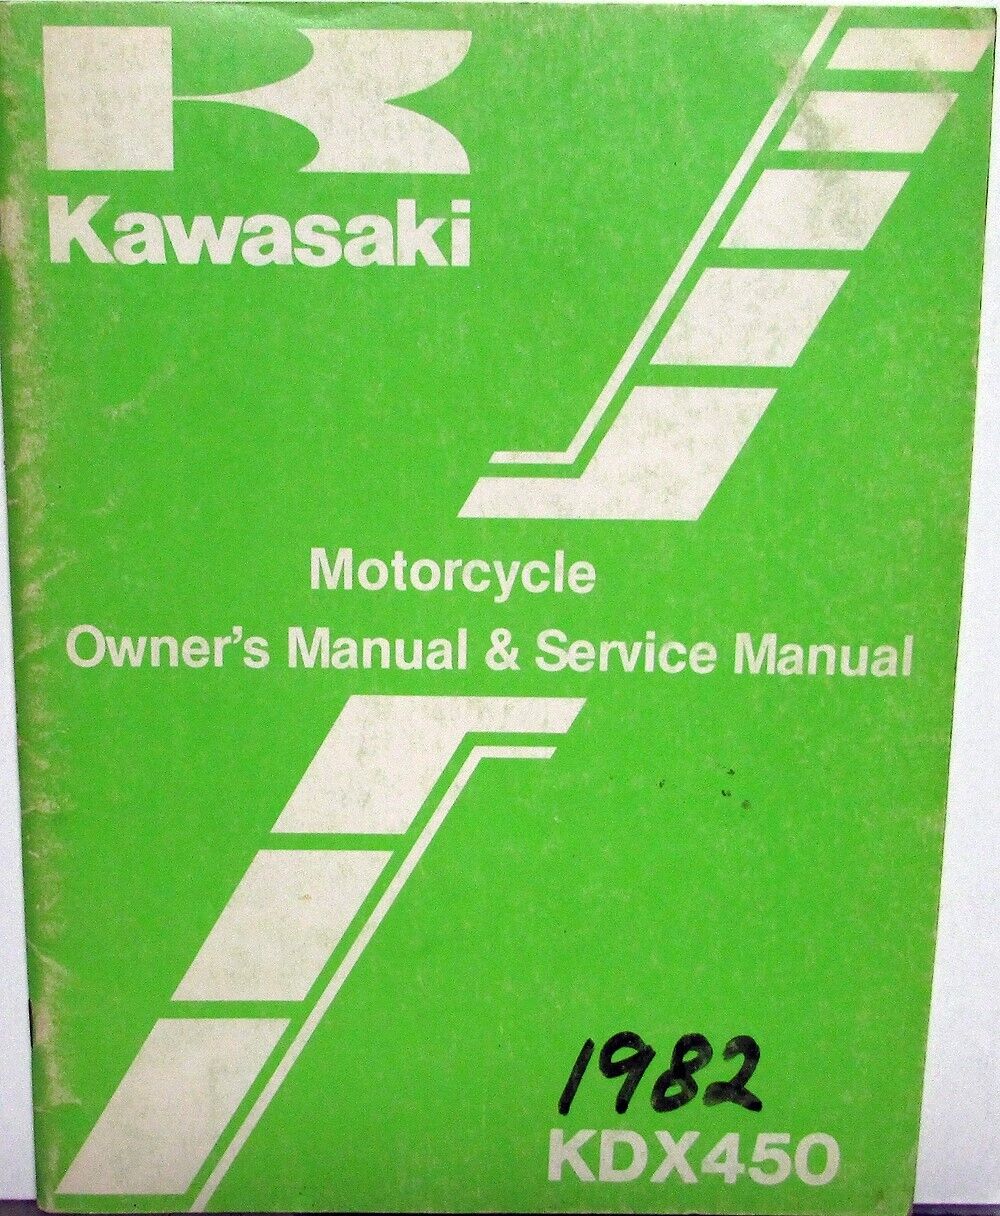 1982 Kawasaki KDX450 Motorcycle Owners & Service Manual